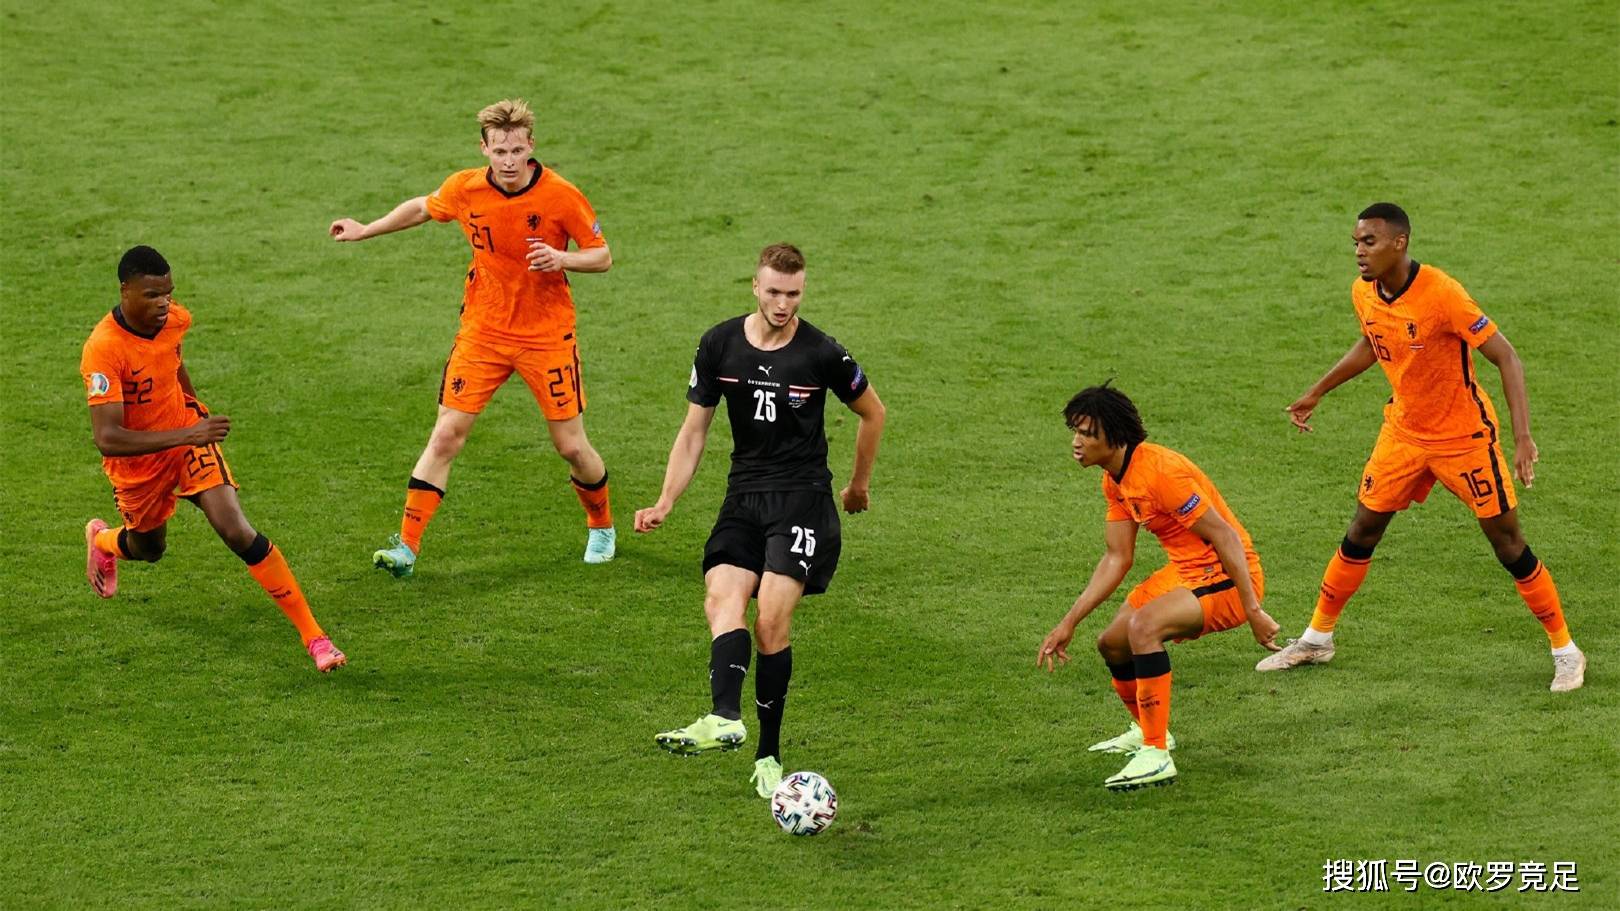 原创【欧洲杯】核心解读:荷兰vs北马其顿,实力差距悬殊,荷兰将全胜